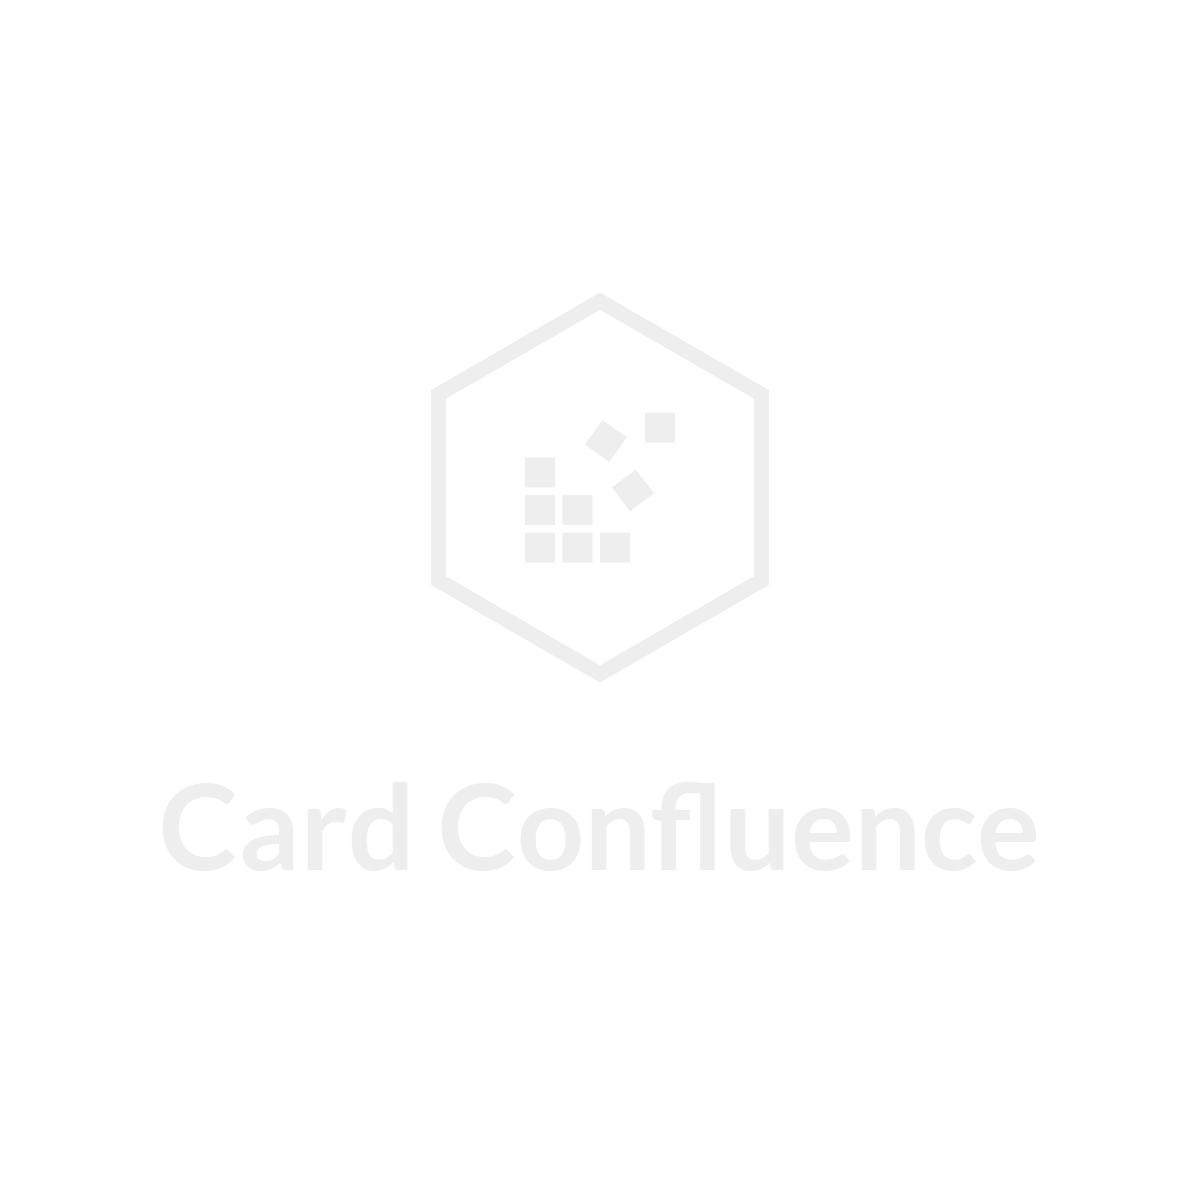 Card Confluence